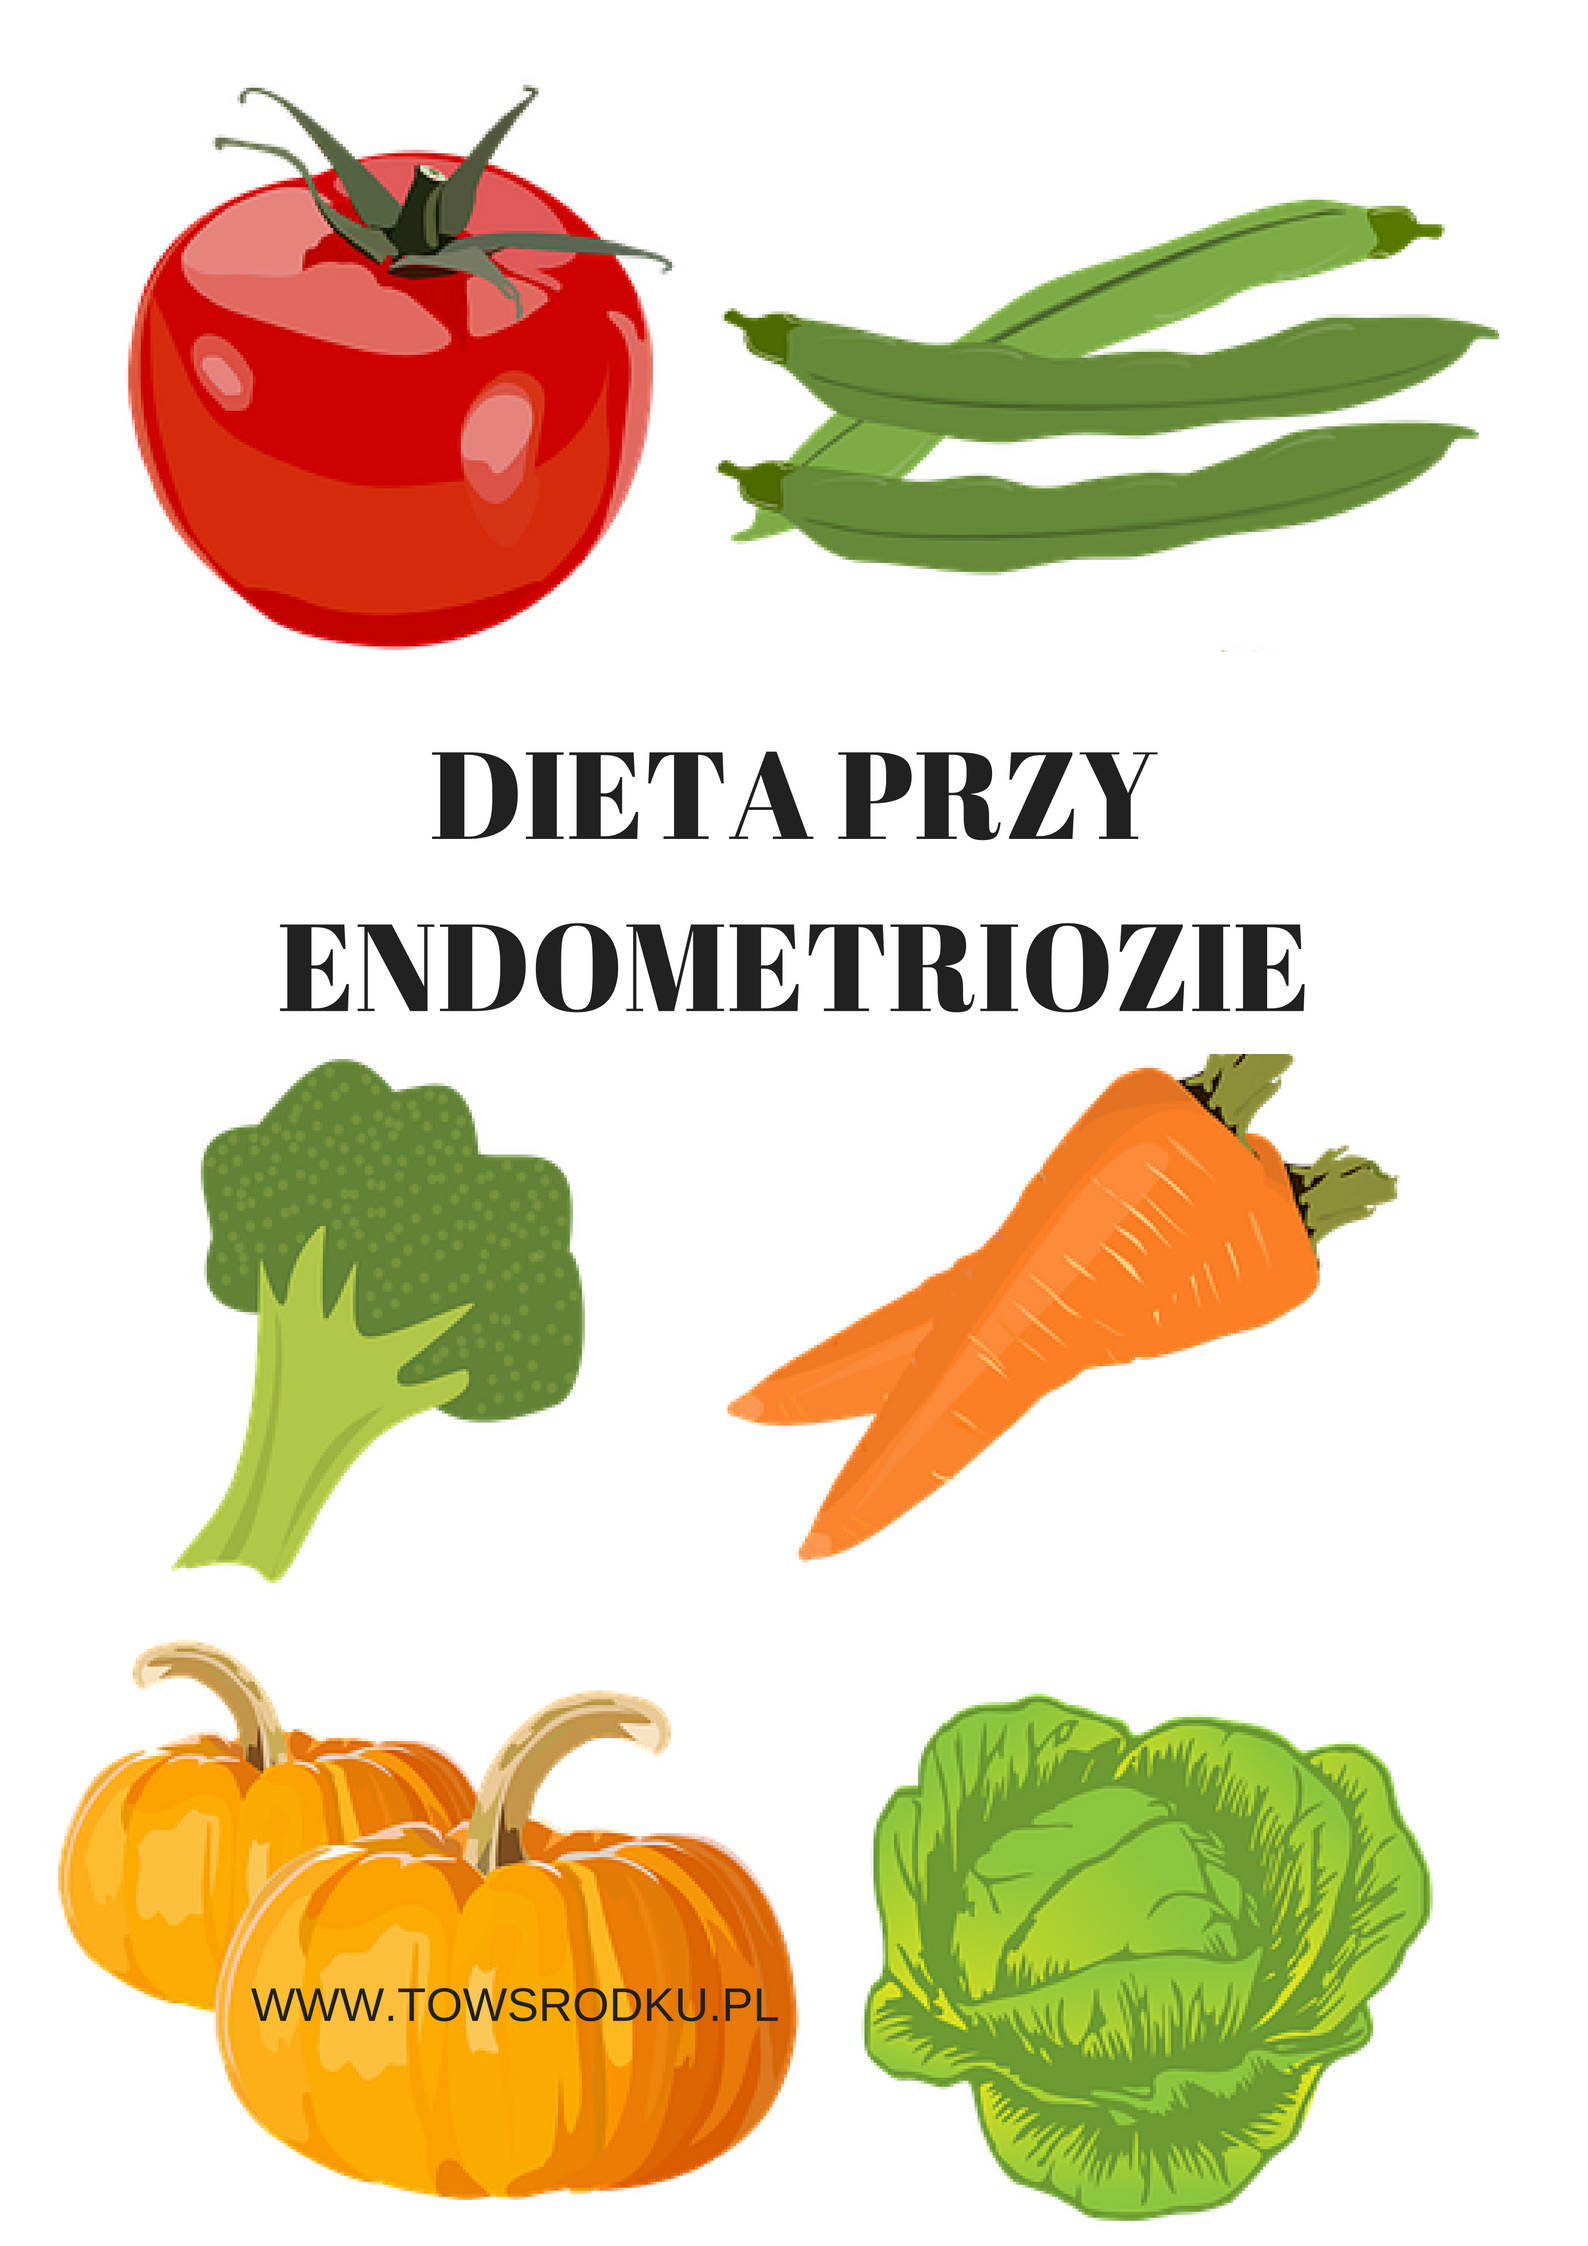 Endometrioza - dieta recomandata